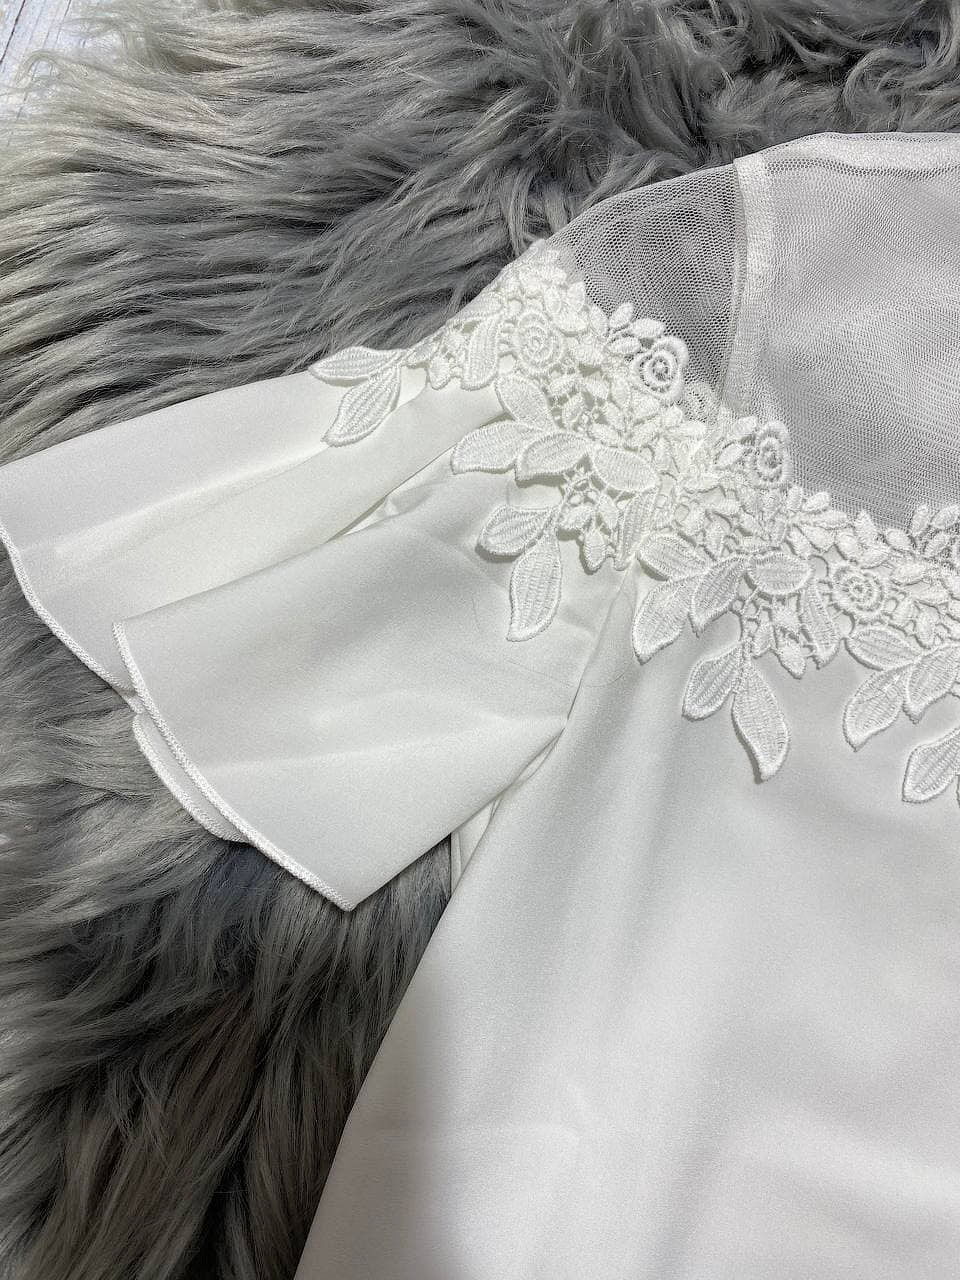 Блузка для девочки Mevis белая 3630-01 - фото